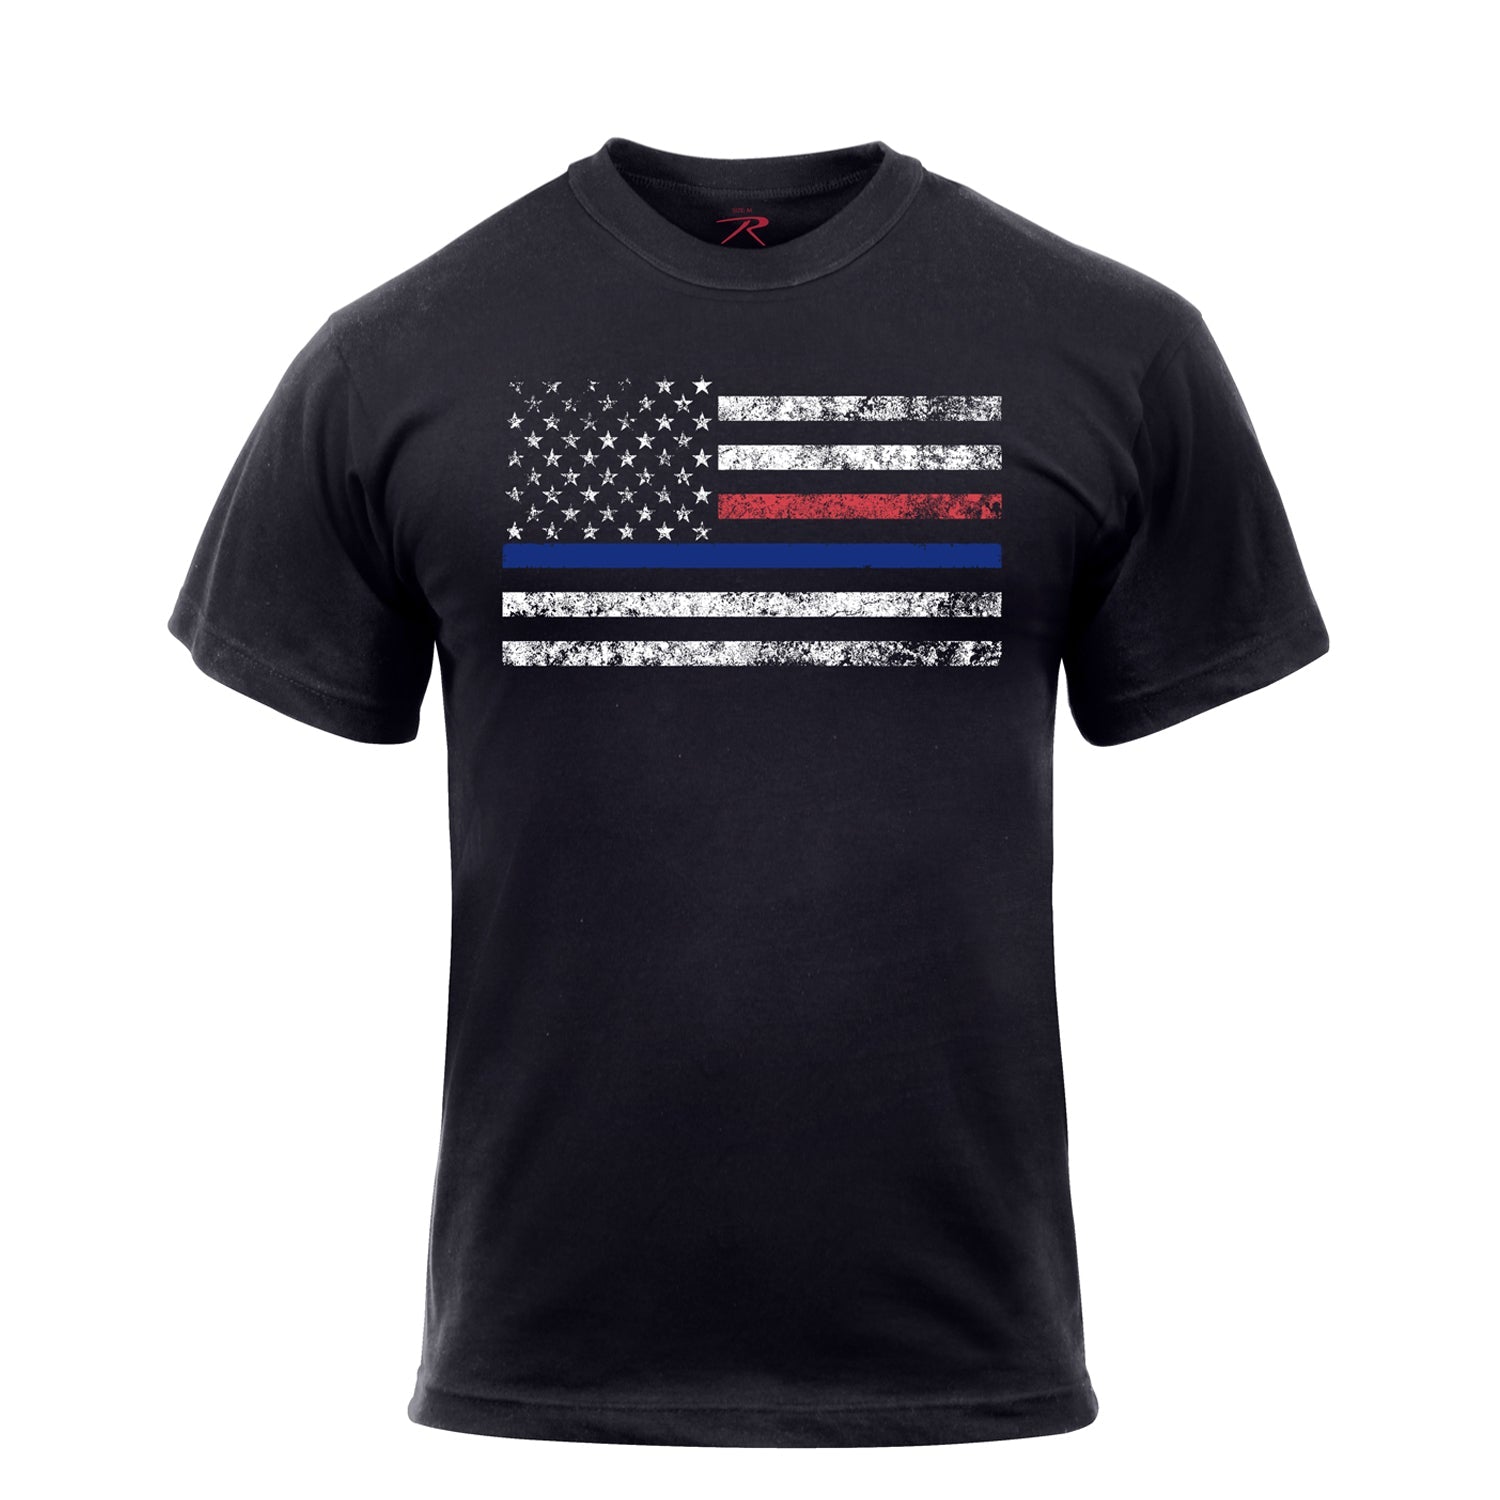 Rothco Thin Blue Line & Red Line T-Shirt Black (61660)